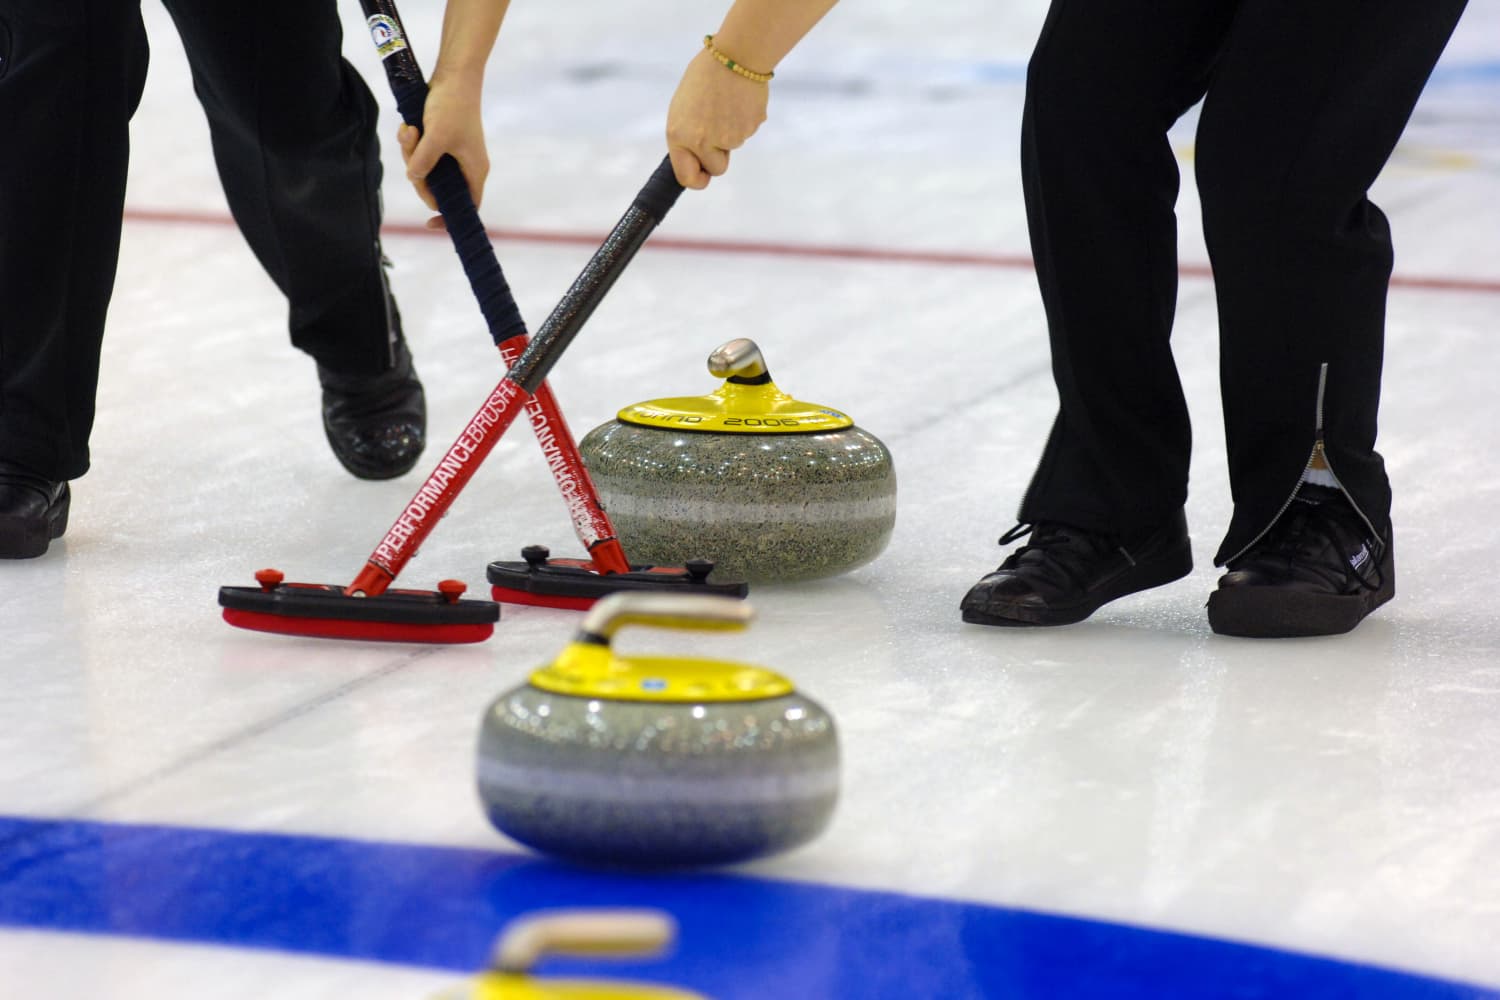 Sledujte ľudí, ako v tomto veselom vírivom videu zaktivizujú olympijský curling s čistiacimi potrebami